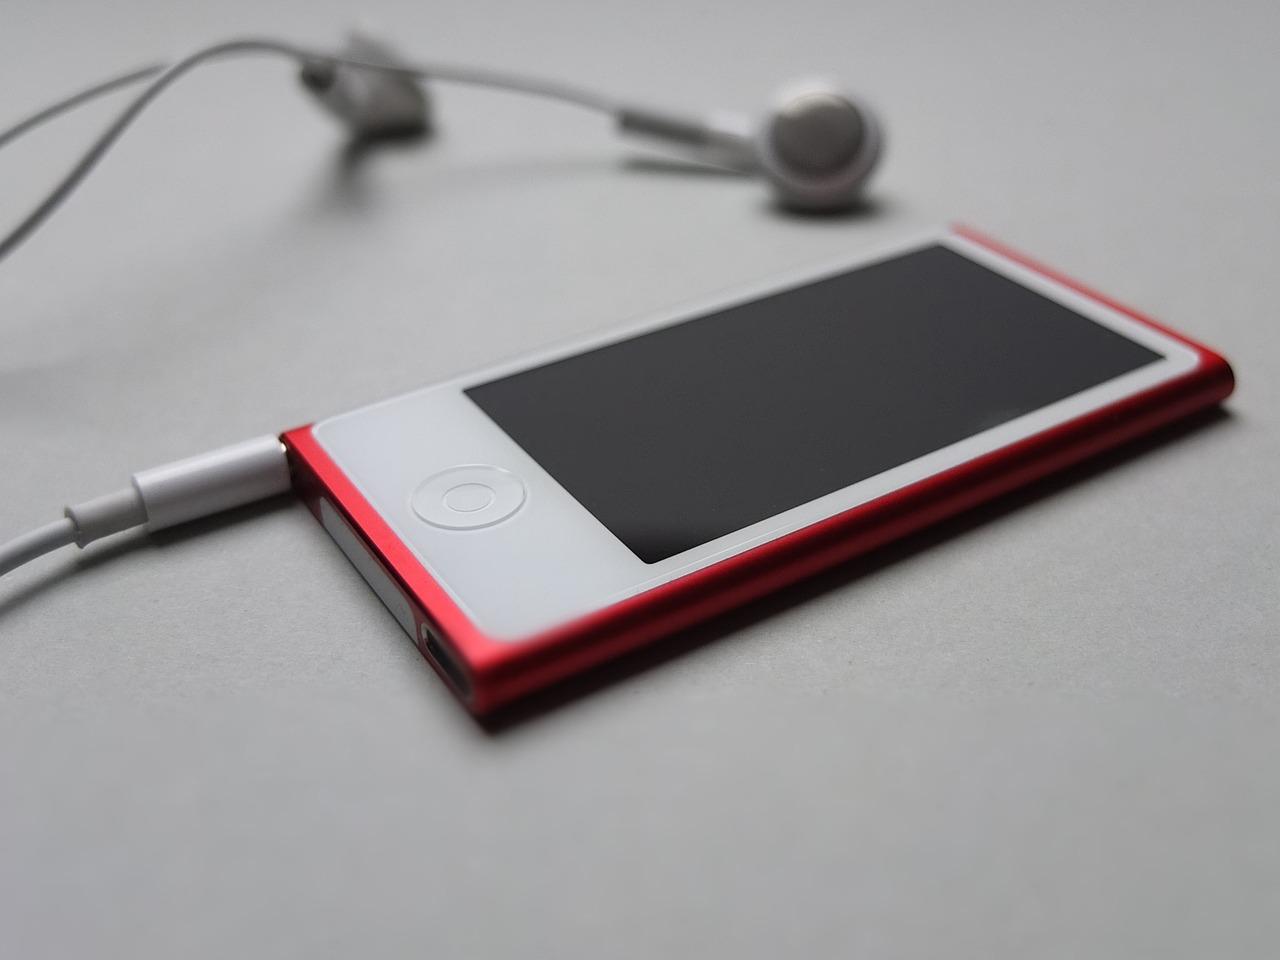 How do I charge iPod nano? 